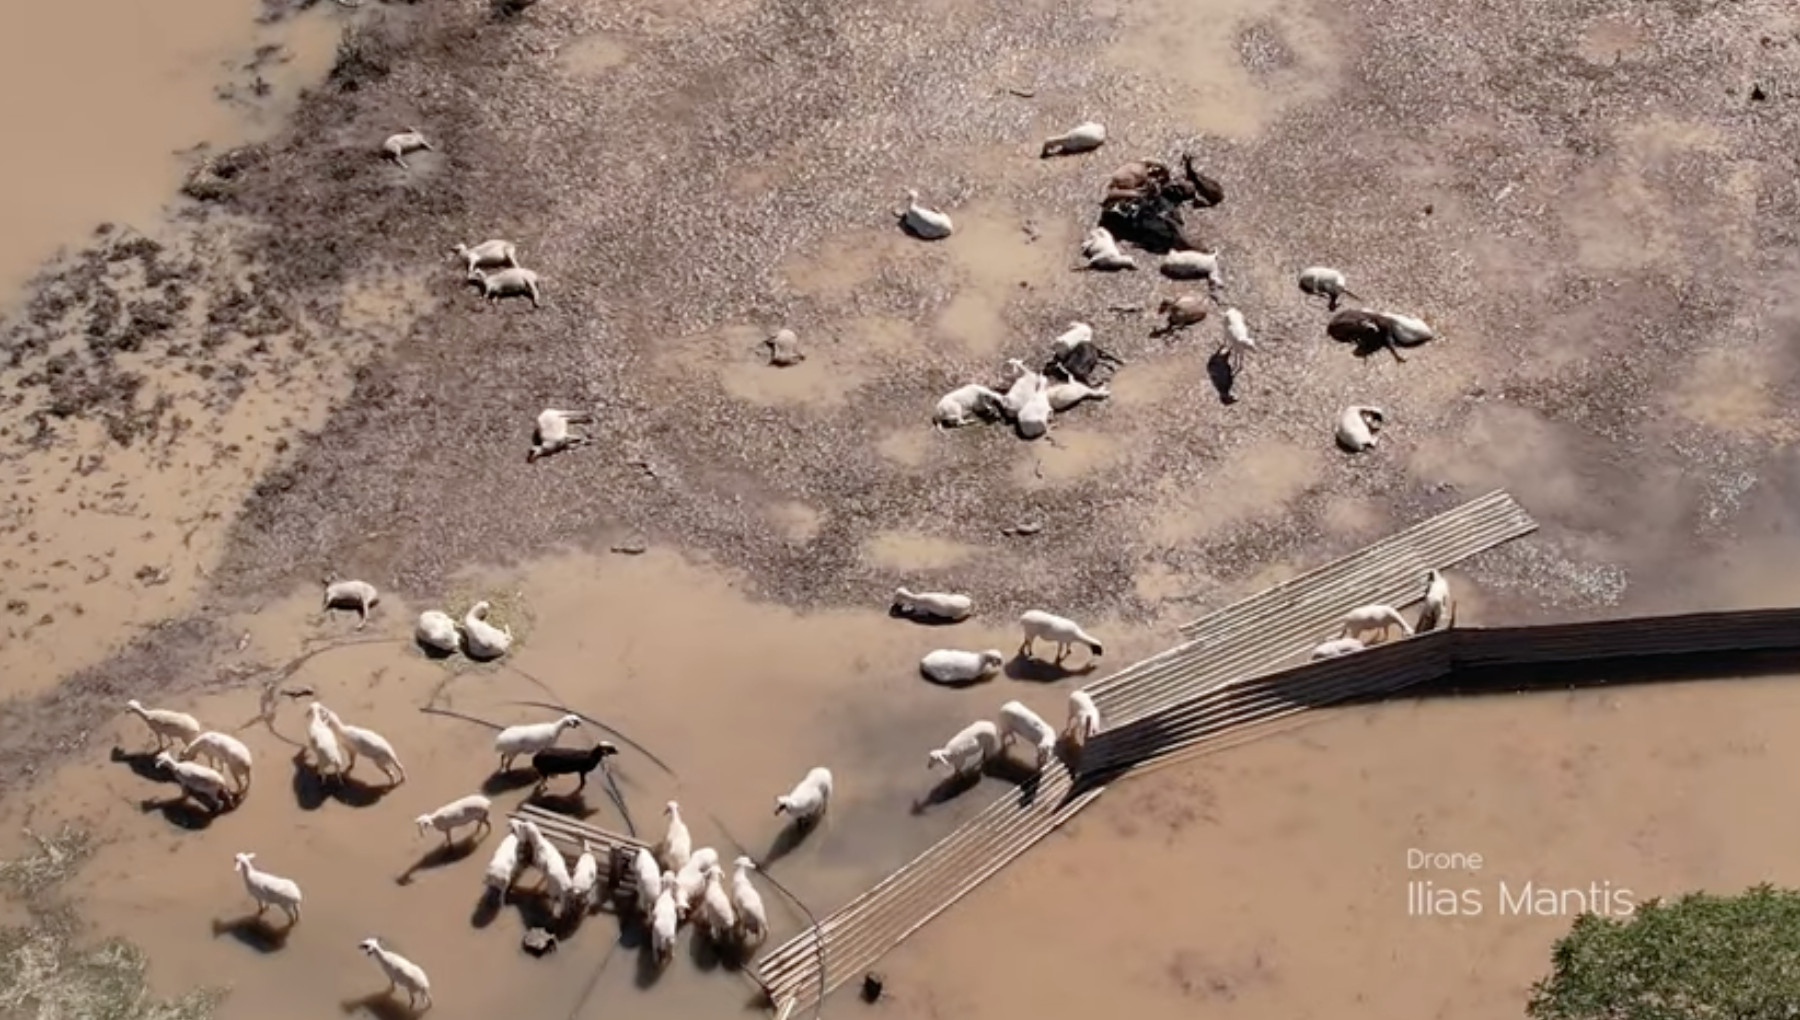 Κακοκαιρία Daniel: Απέραντο νεκροταφείο ζώων ο θεσσαλικός κάμπος – Εικόνες σοκ από ψηλά